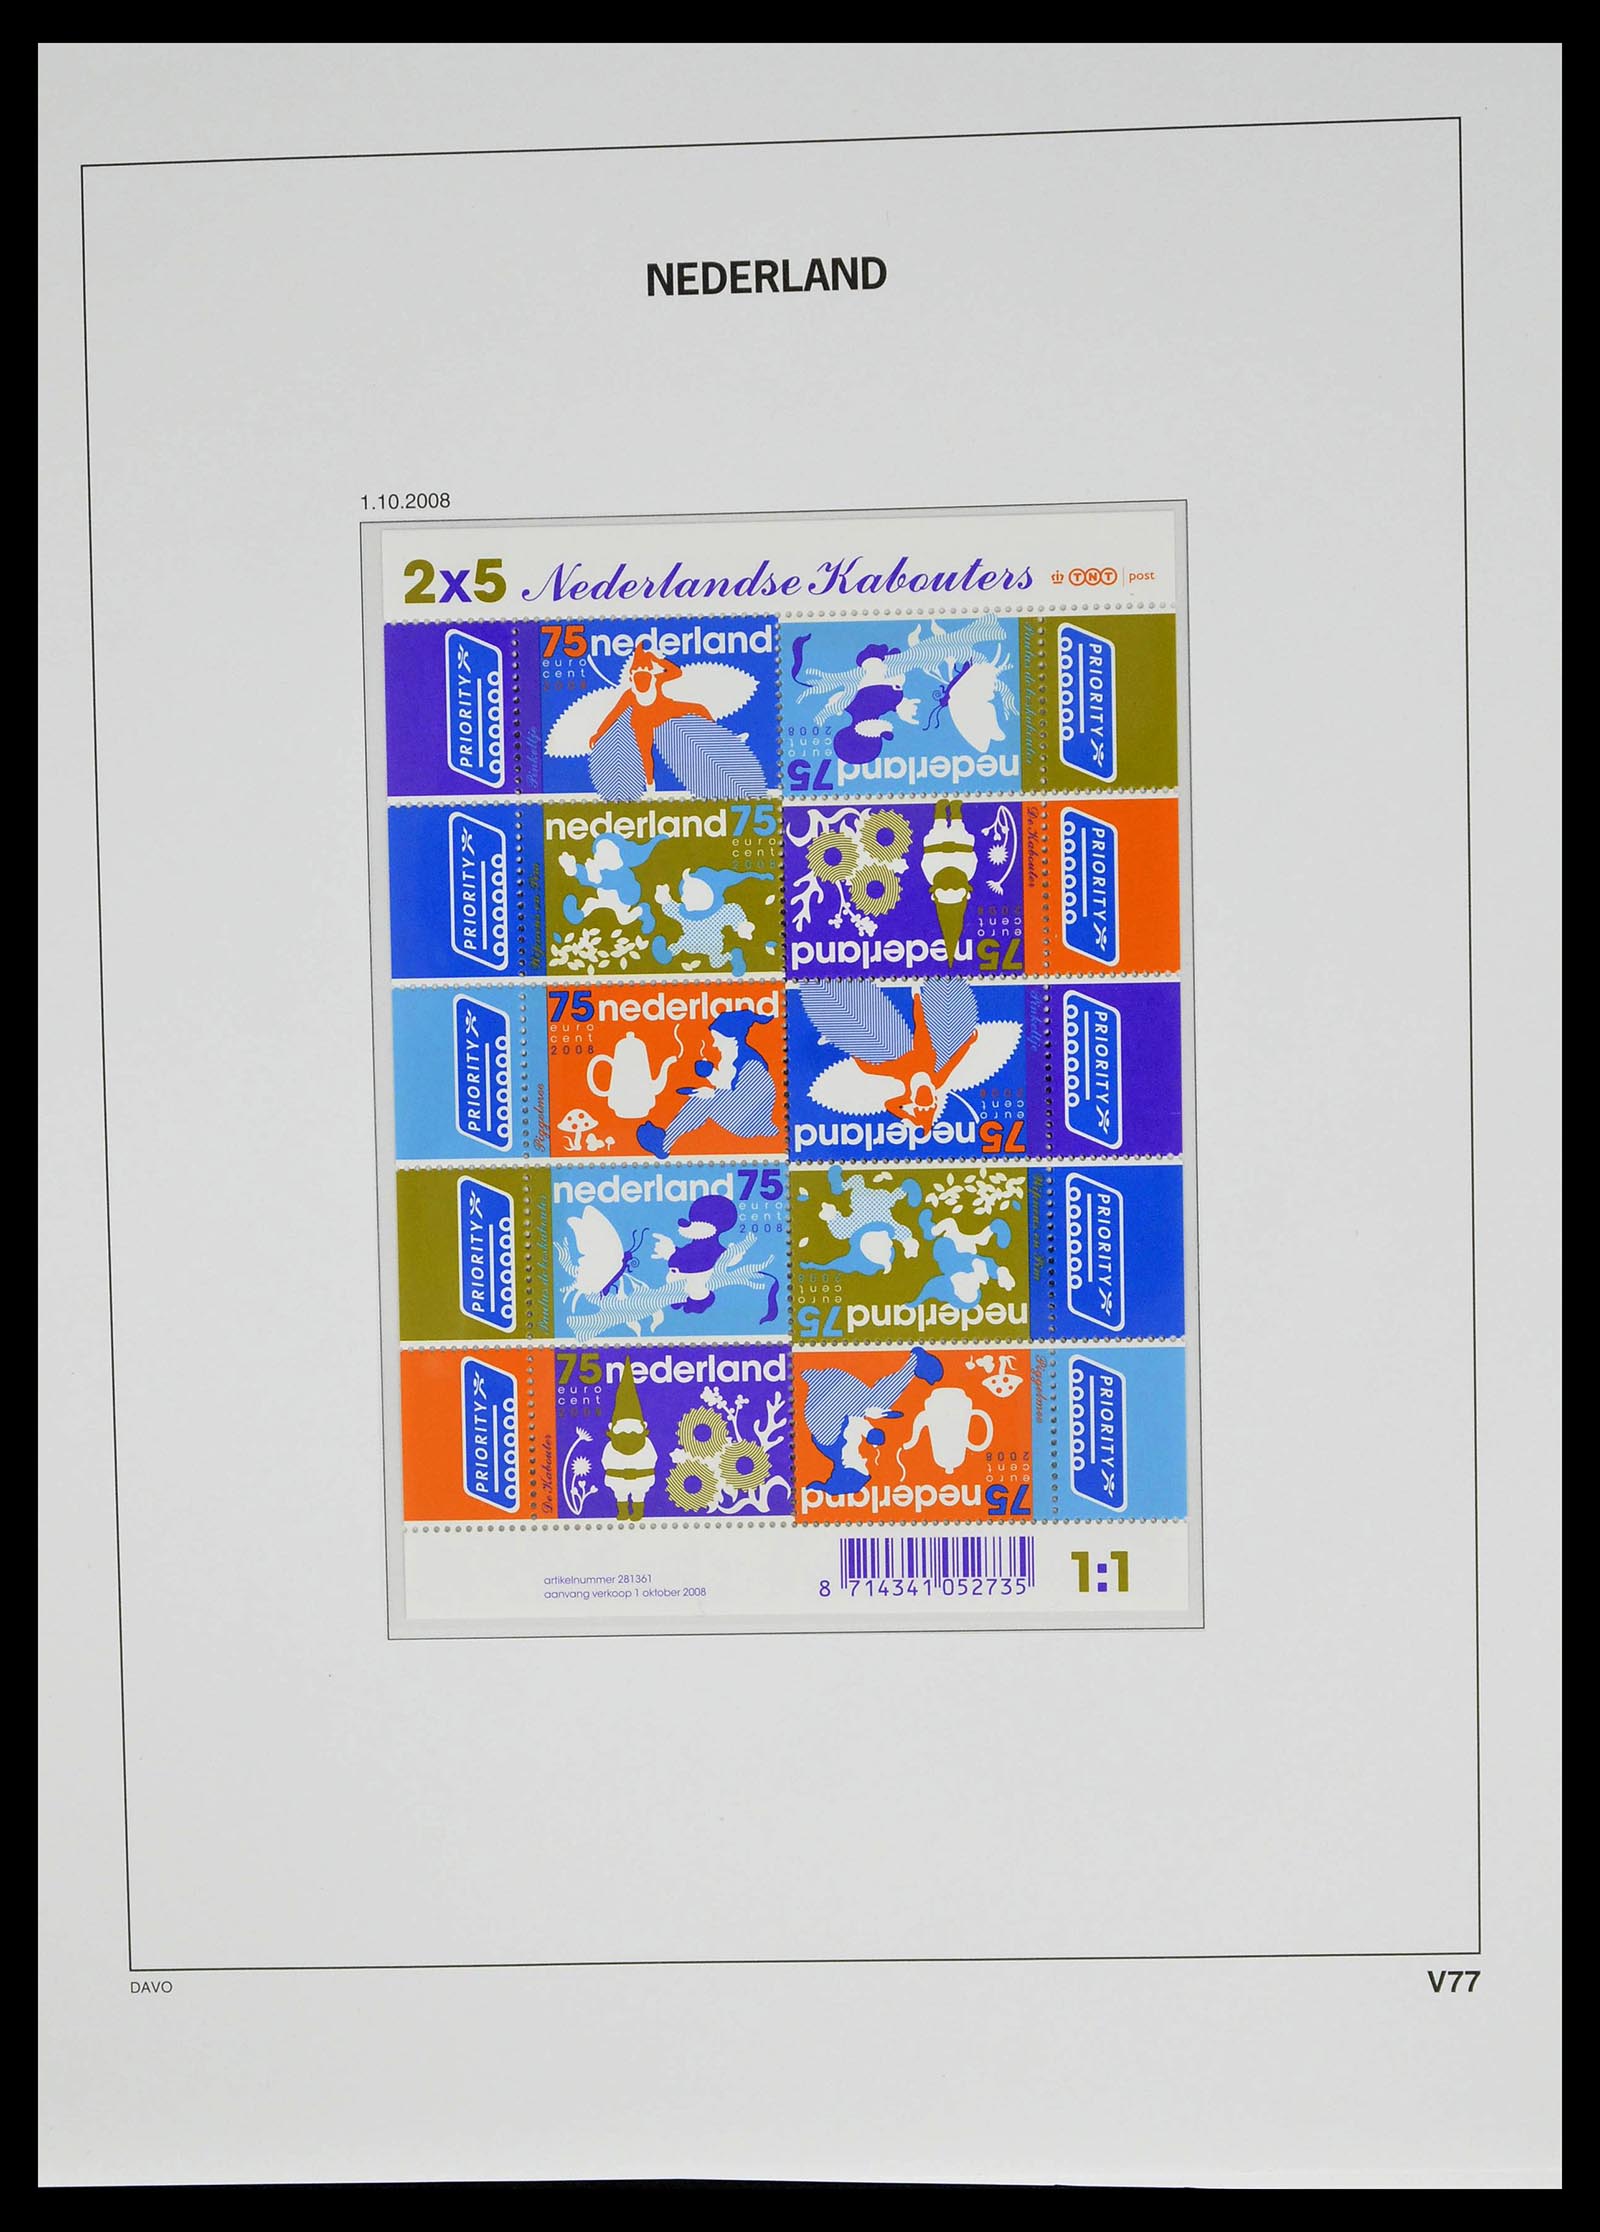 39134 0091 - Stamp collection 39134 Netherlands sheetlets 1992-2019!